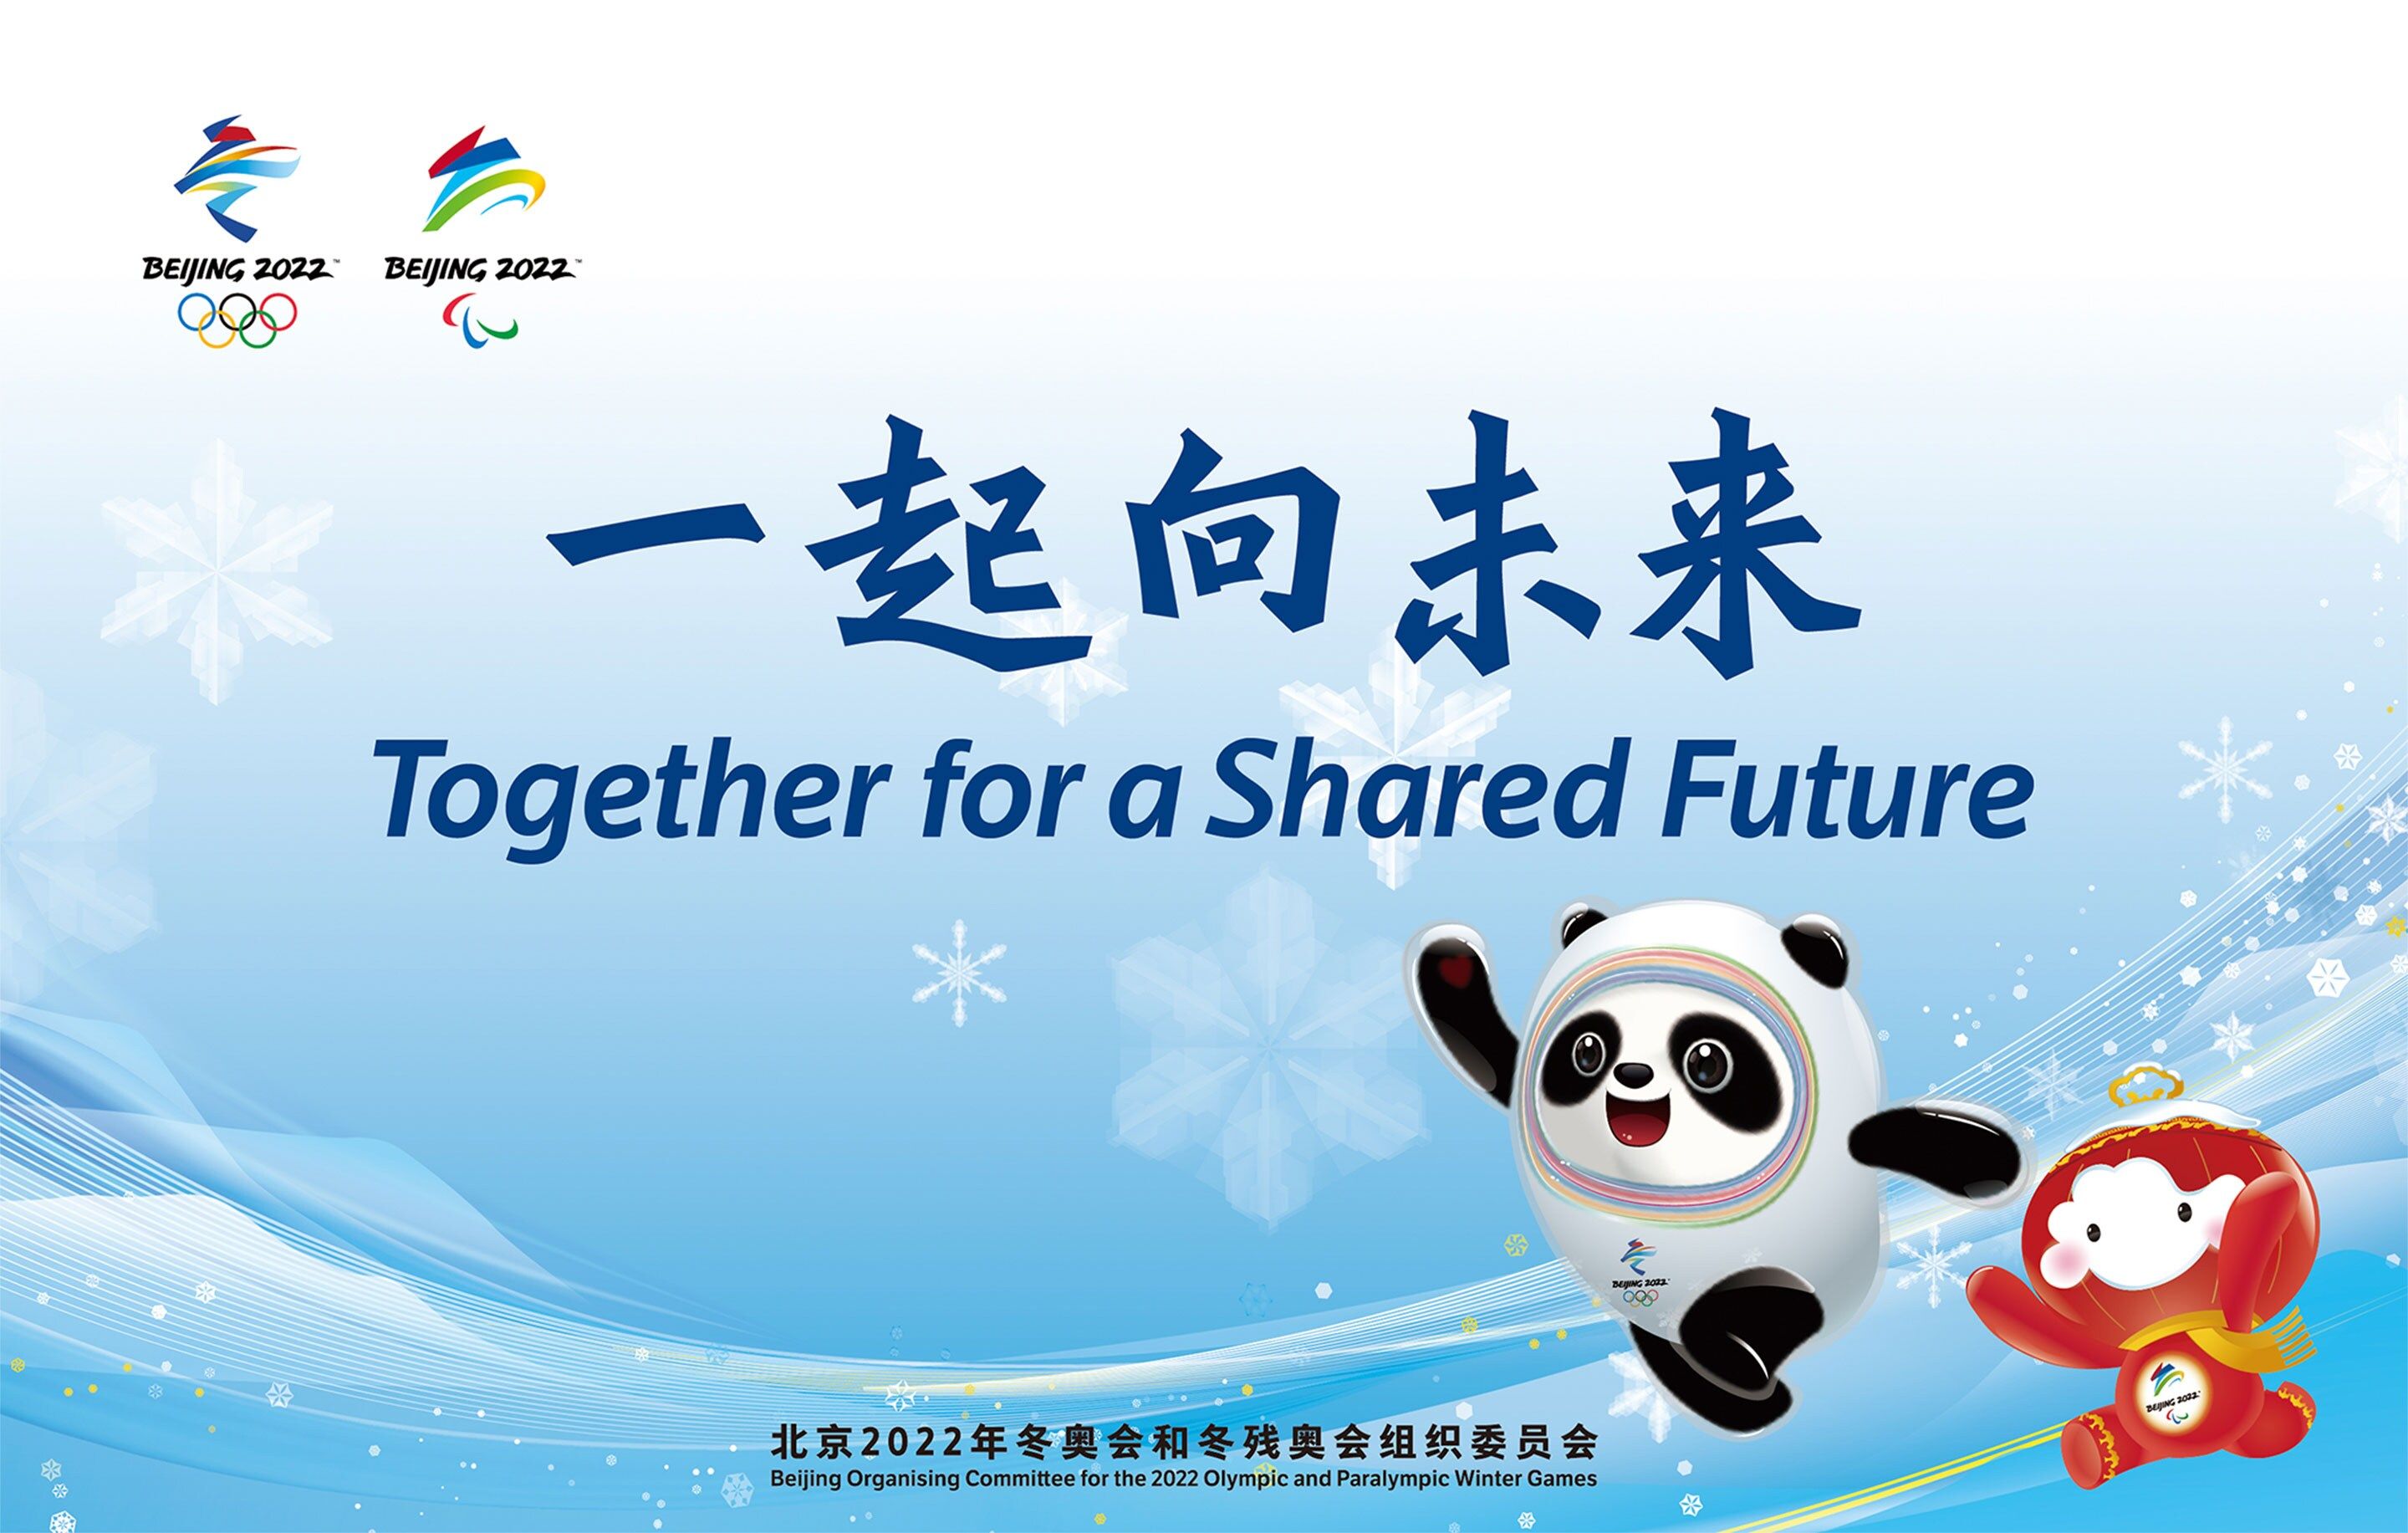 Beijing 2022 motto graphic (Beijing 2022)